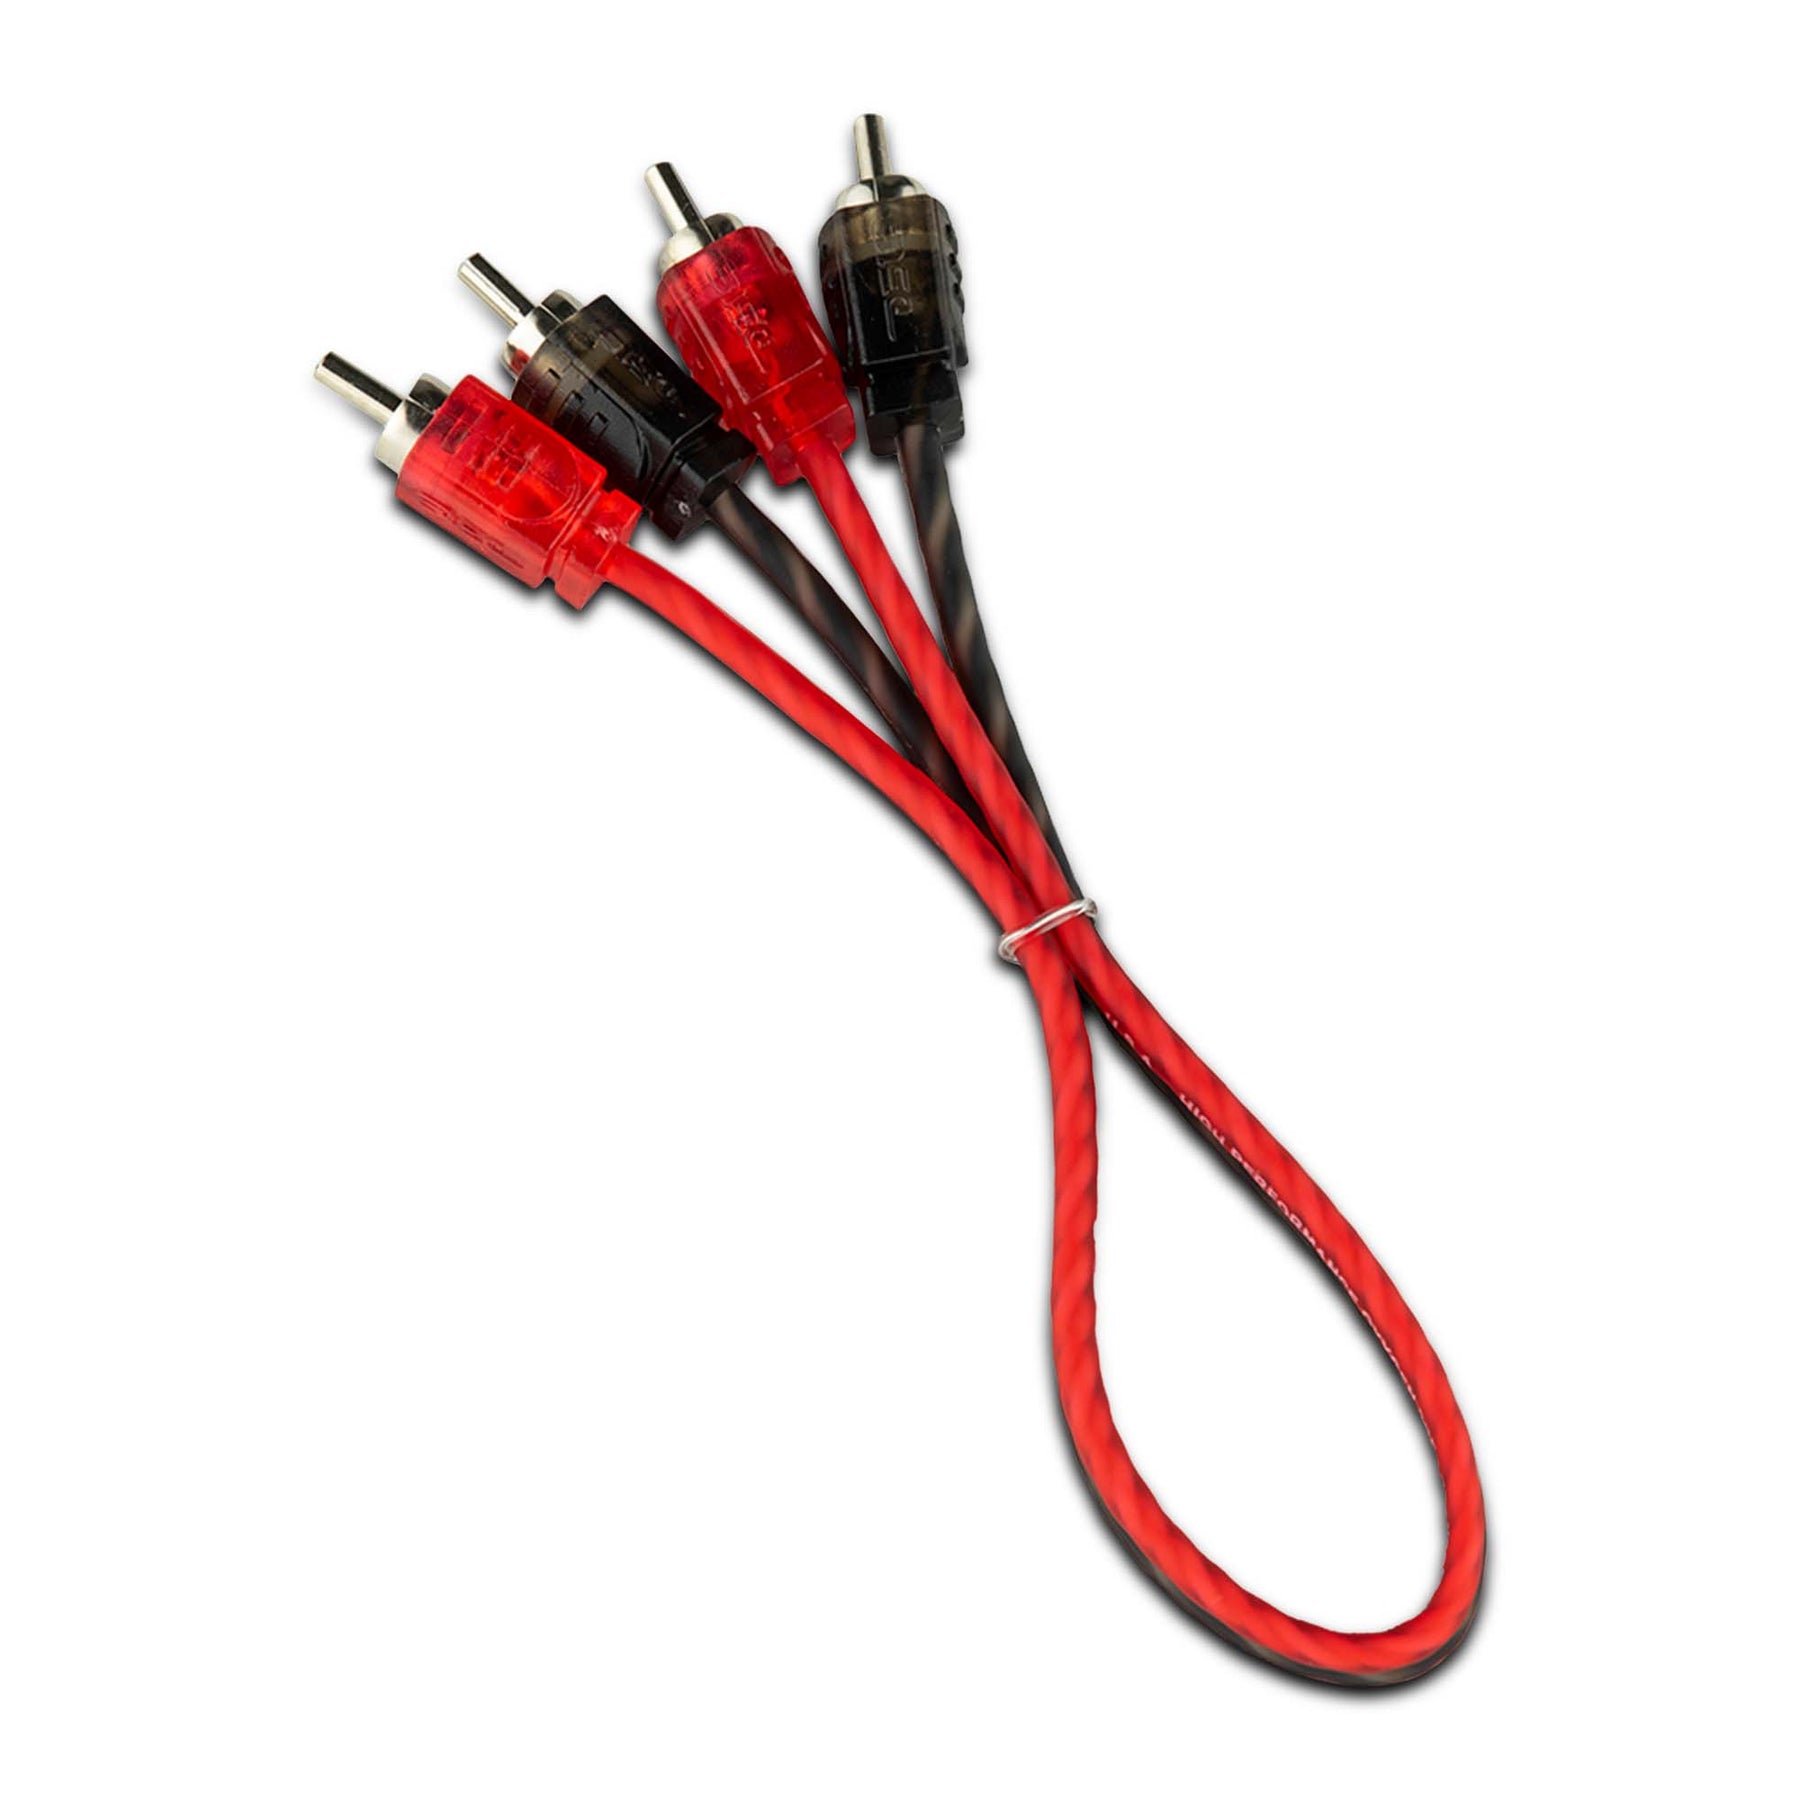 Comprar Four Connect Stage1 70mm² CCA Ultra-Flex Cable de